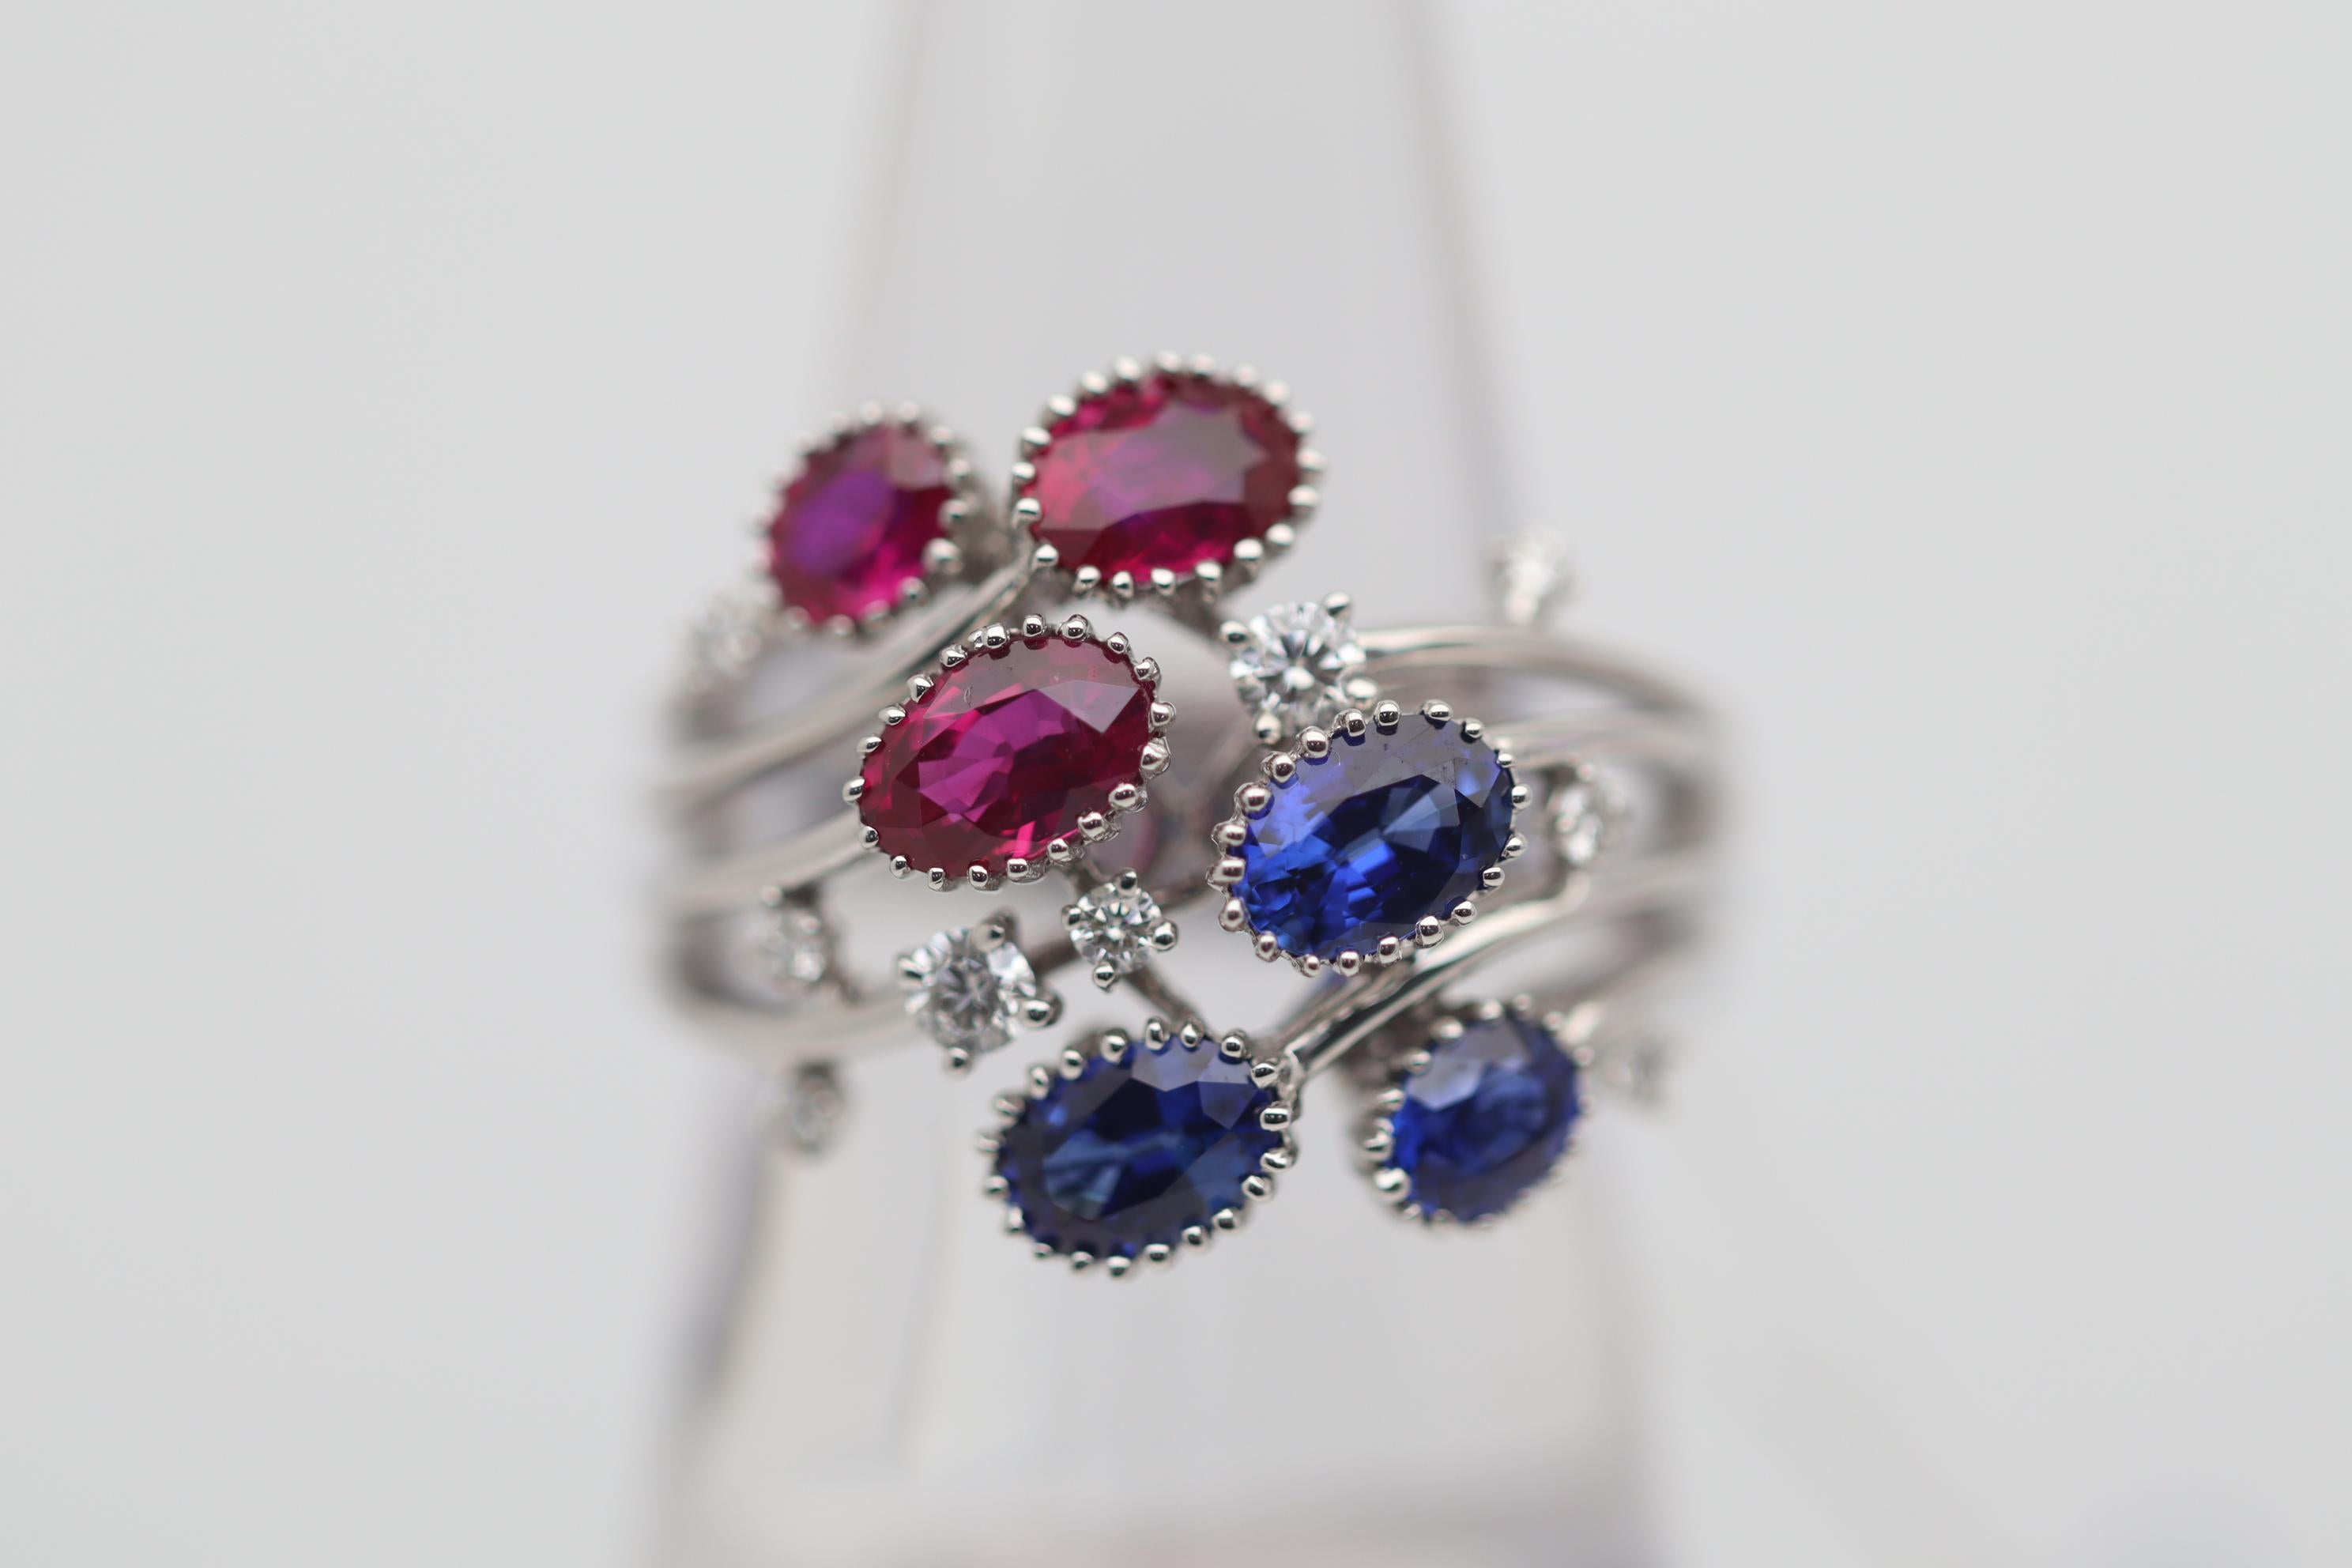 Eines unserer neuen Lieblingsstücke in unserer Collection'S! Dieser atemberaubende Blumenring besteht aus 3 lebhaften roten Rubinen und 3 ebenso schönen lebhaften königsblauen Saphiren. Sie wiegen insgesamt 1,62 Karat bzw. 1,49 Karat. Diamanten von